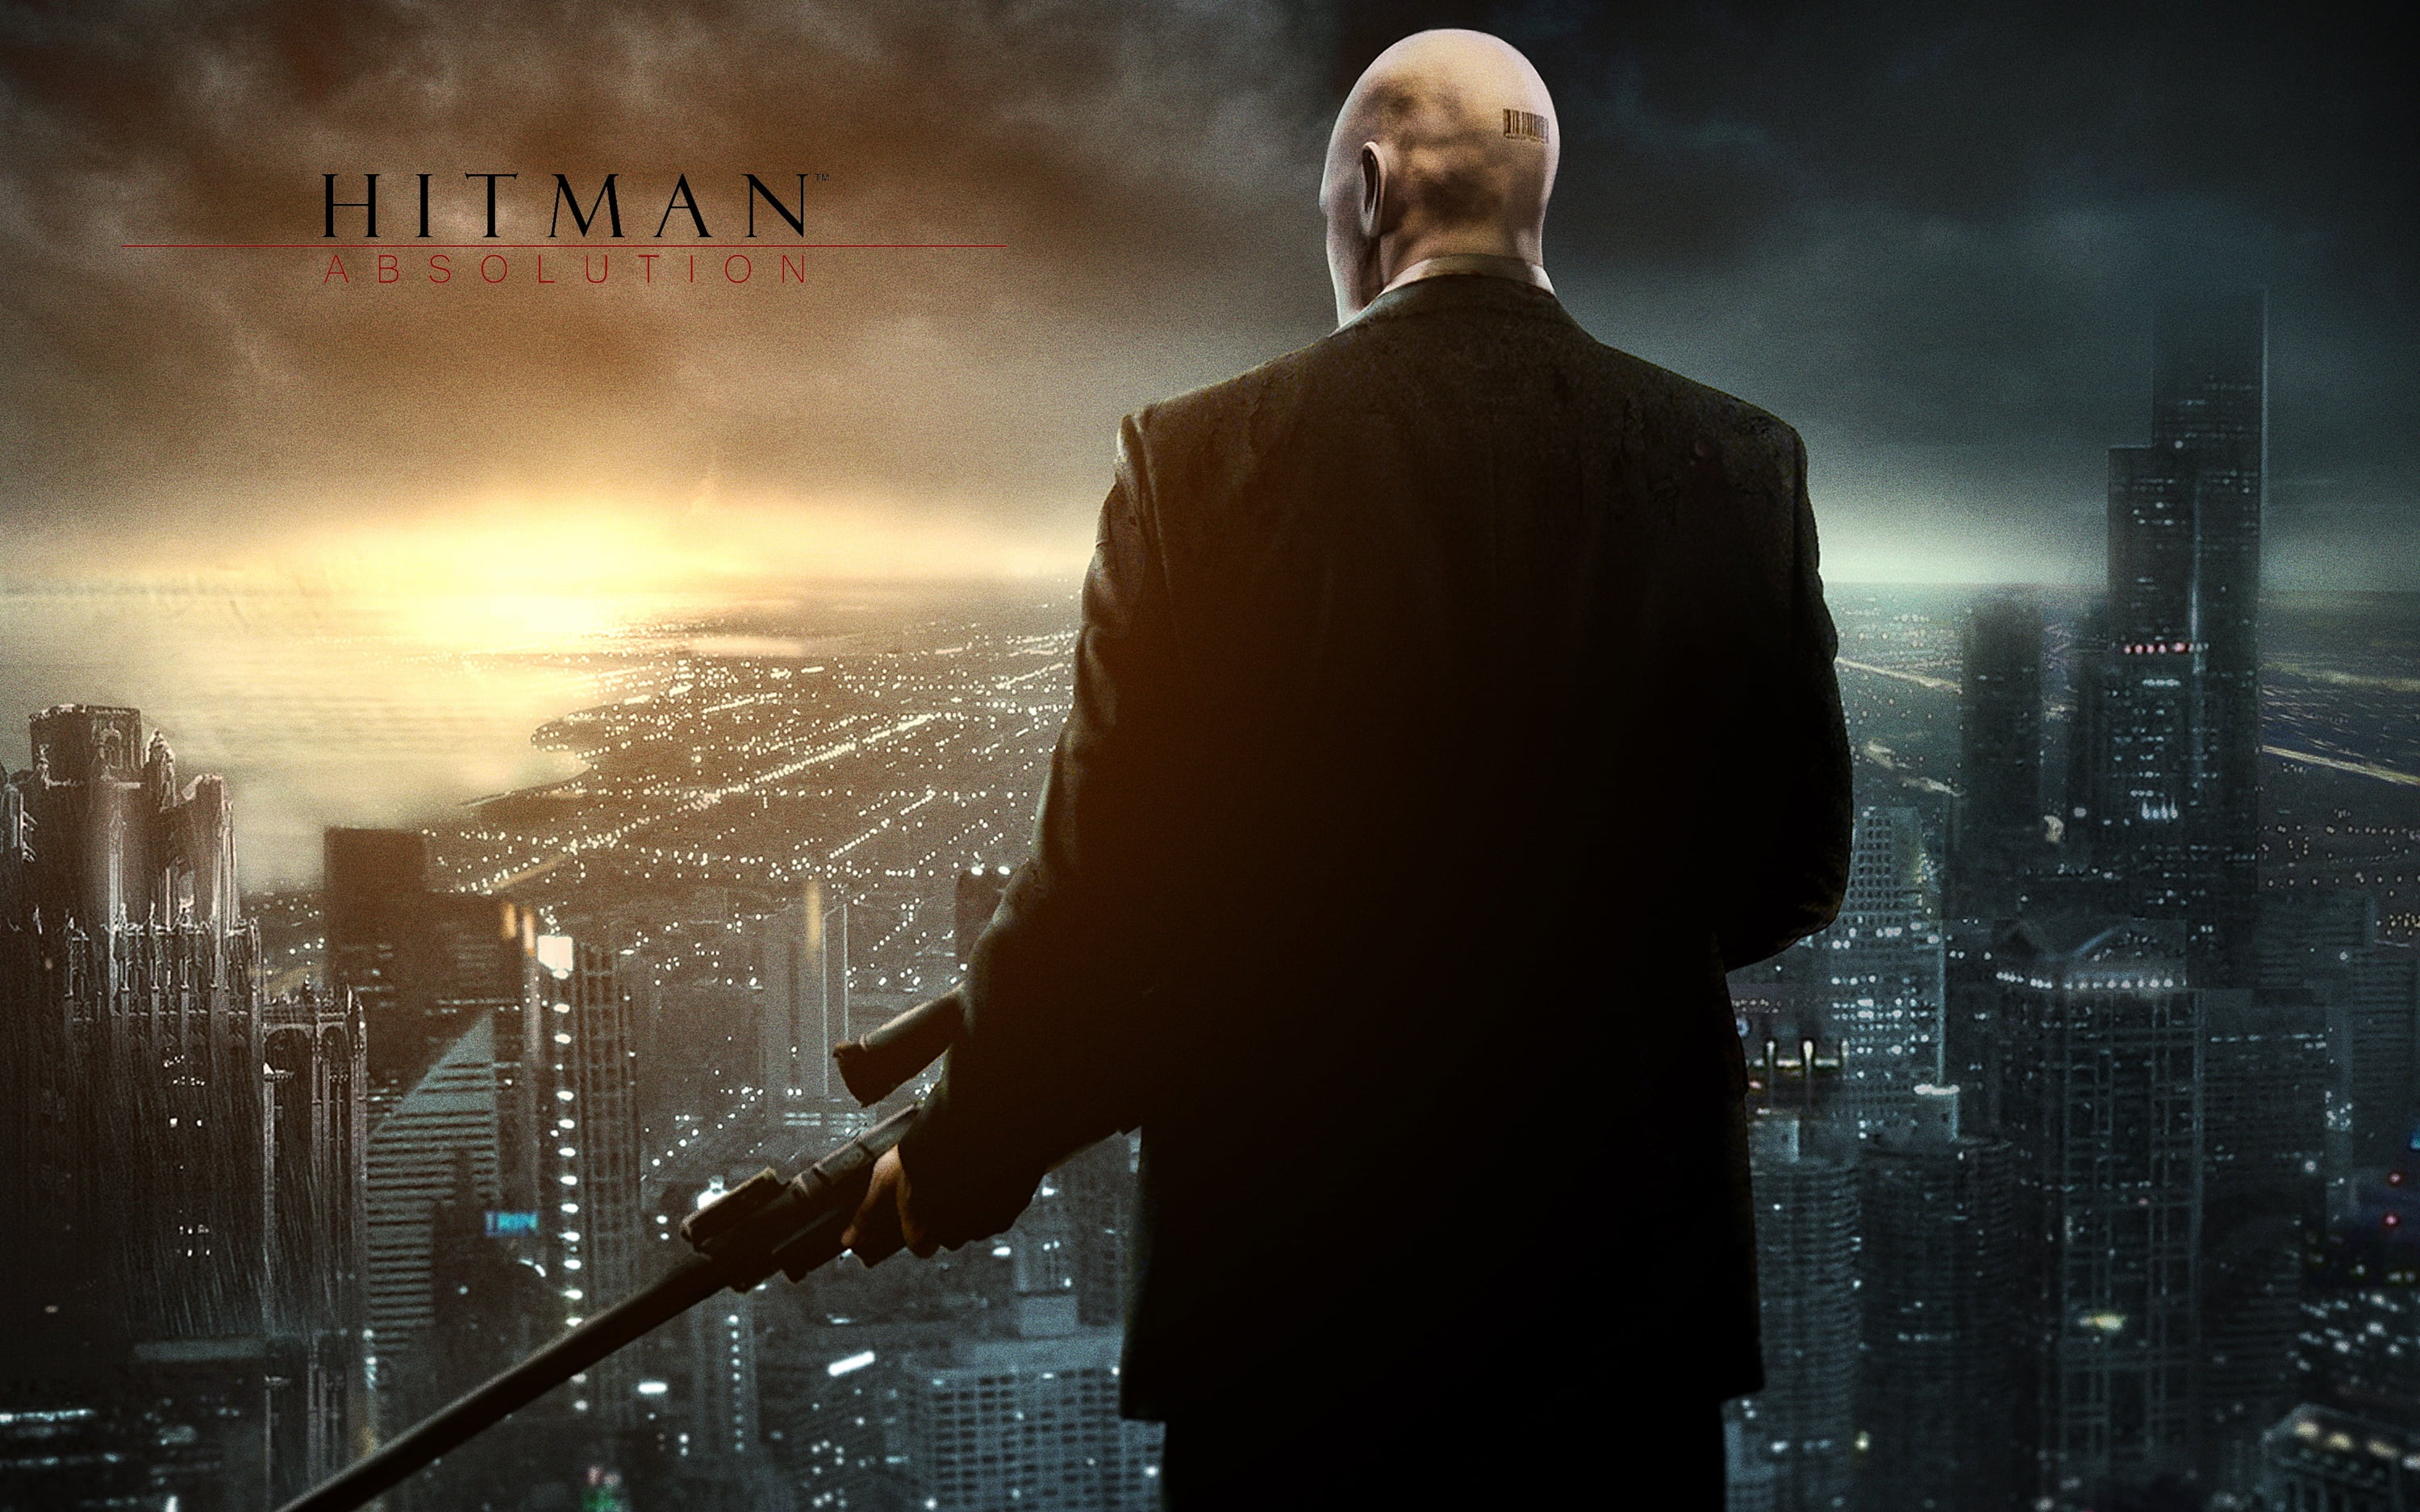 Hitman Absolute game poster, hitman vi, 2014, premiere, men, businessman